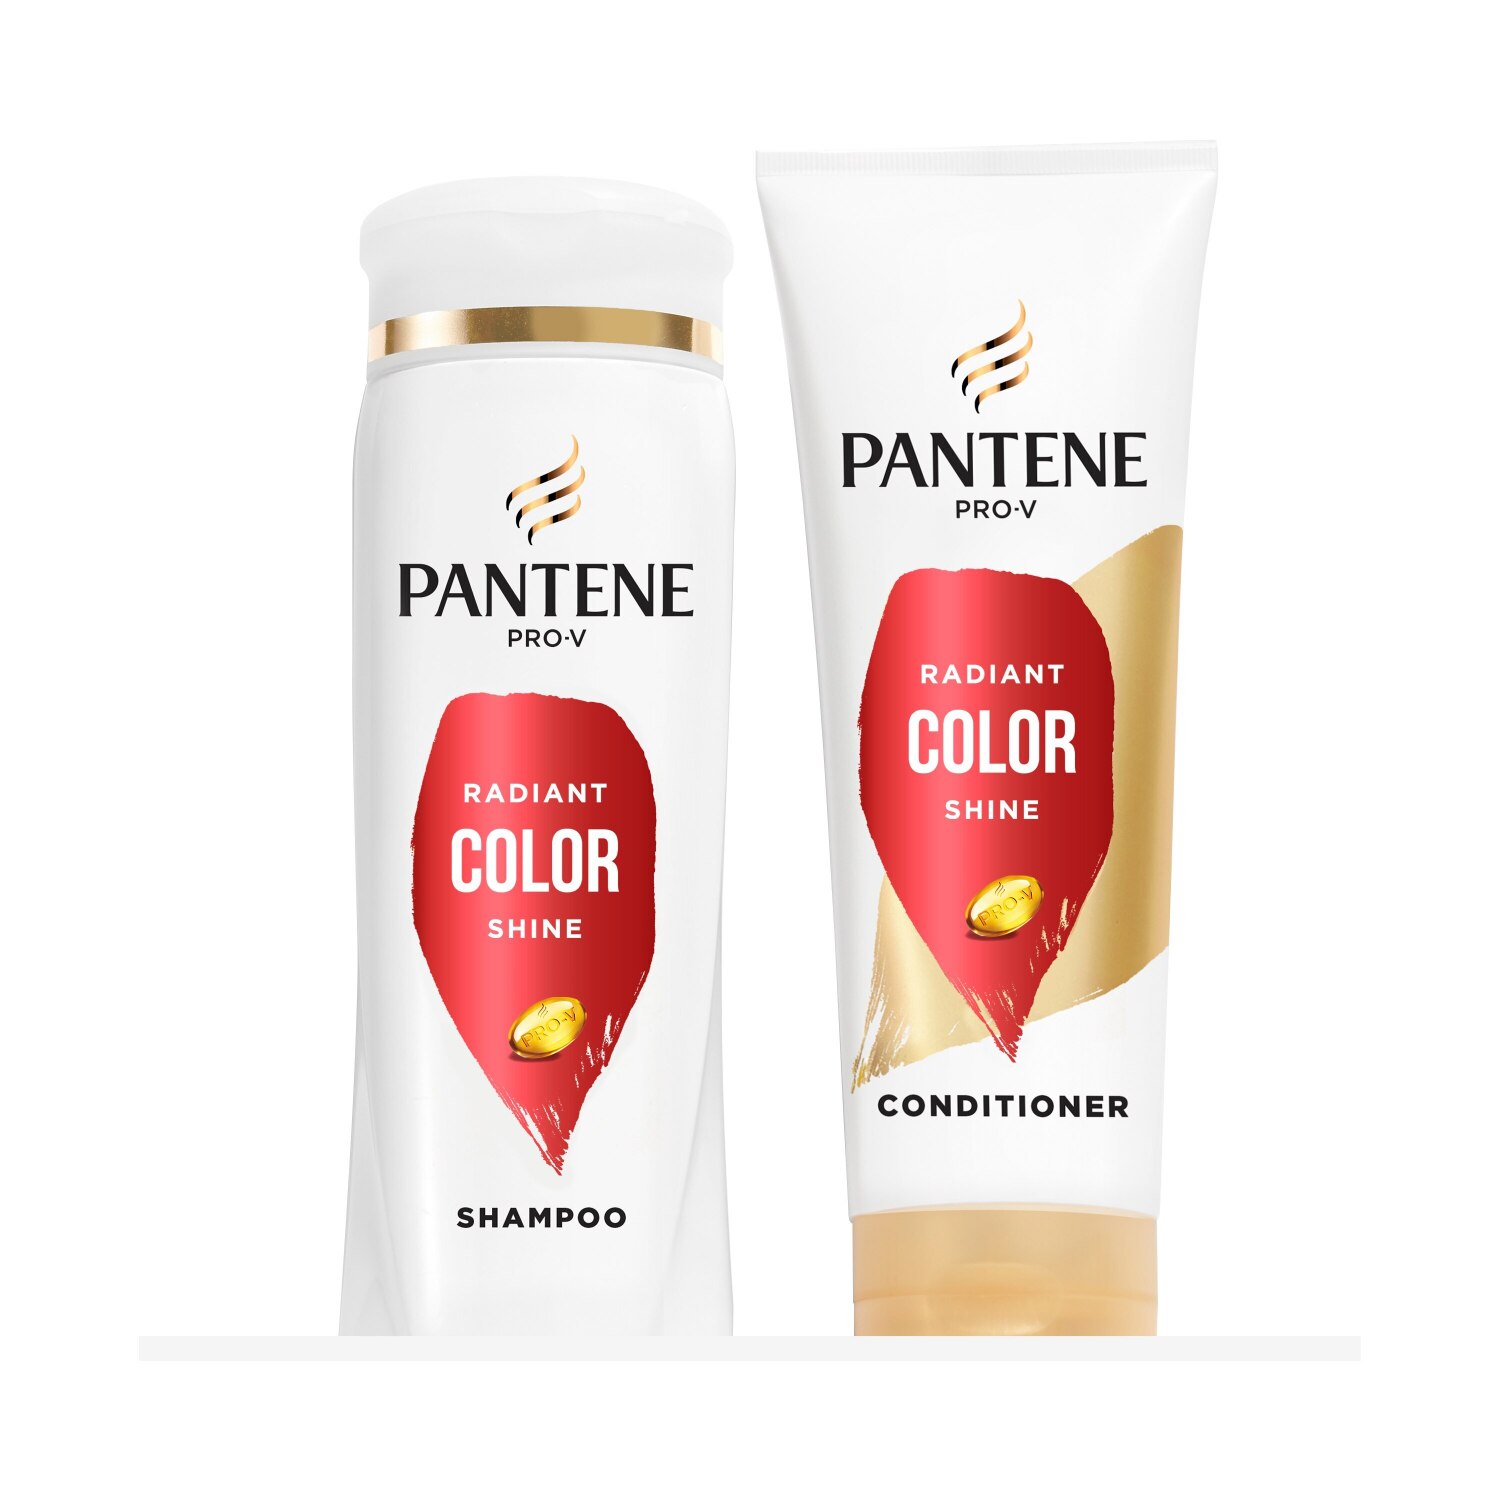 Pantene Pro-V Radiant Color Shine Shampoo + Conditioner Bundle